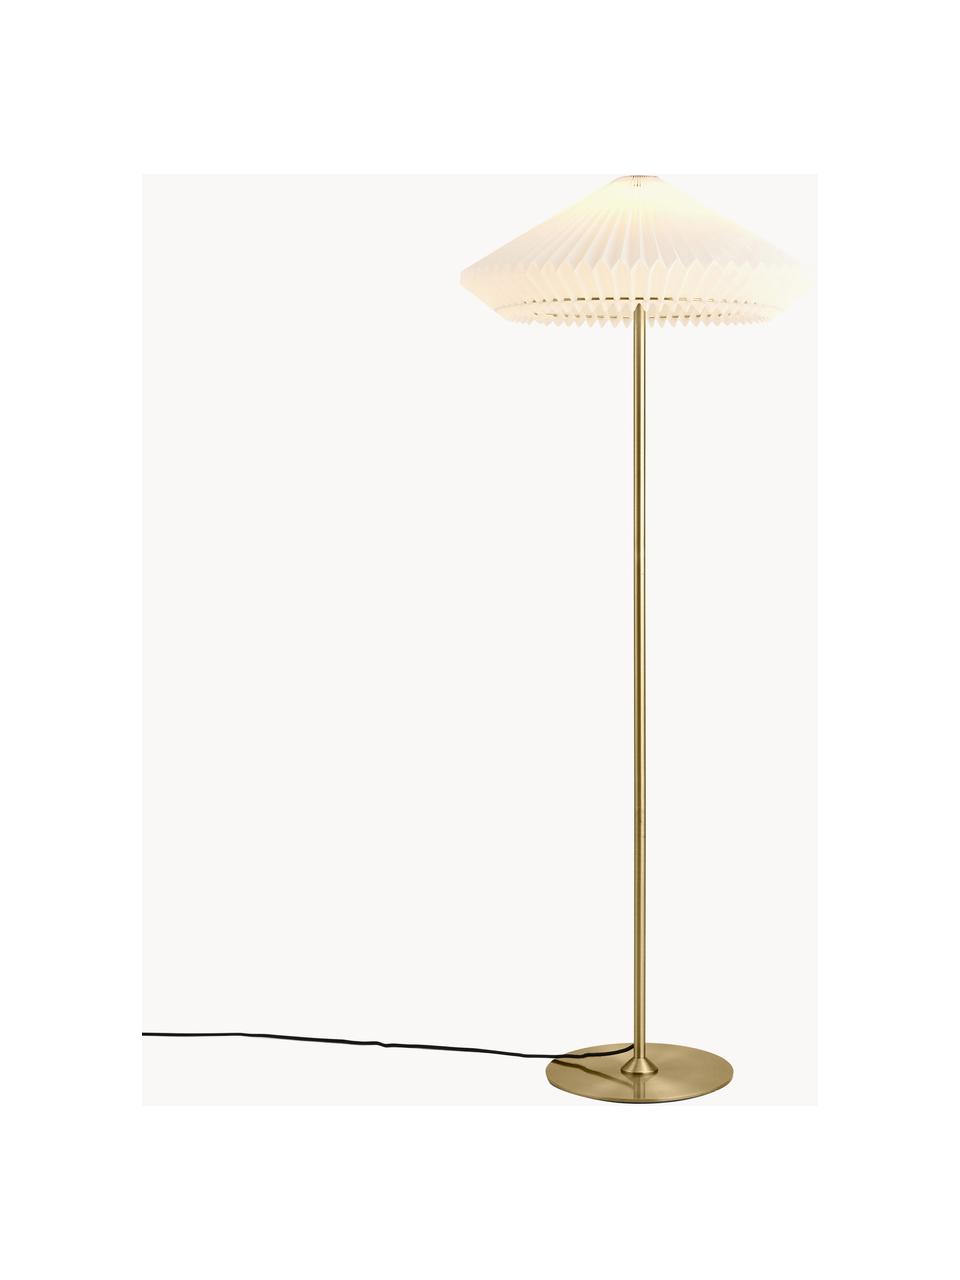 Lampa podłogowa Paris, Biały, odcienie złotego, W 140 cm